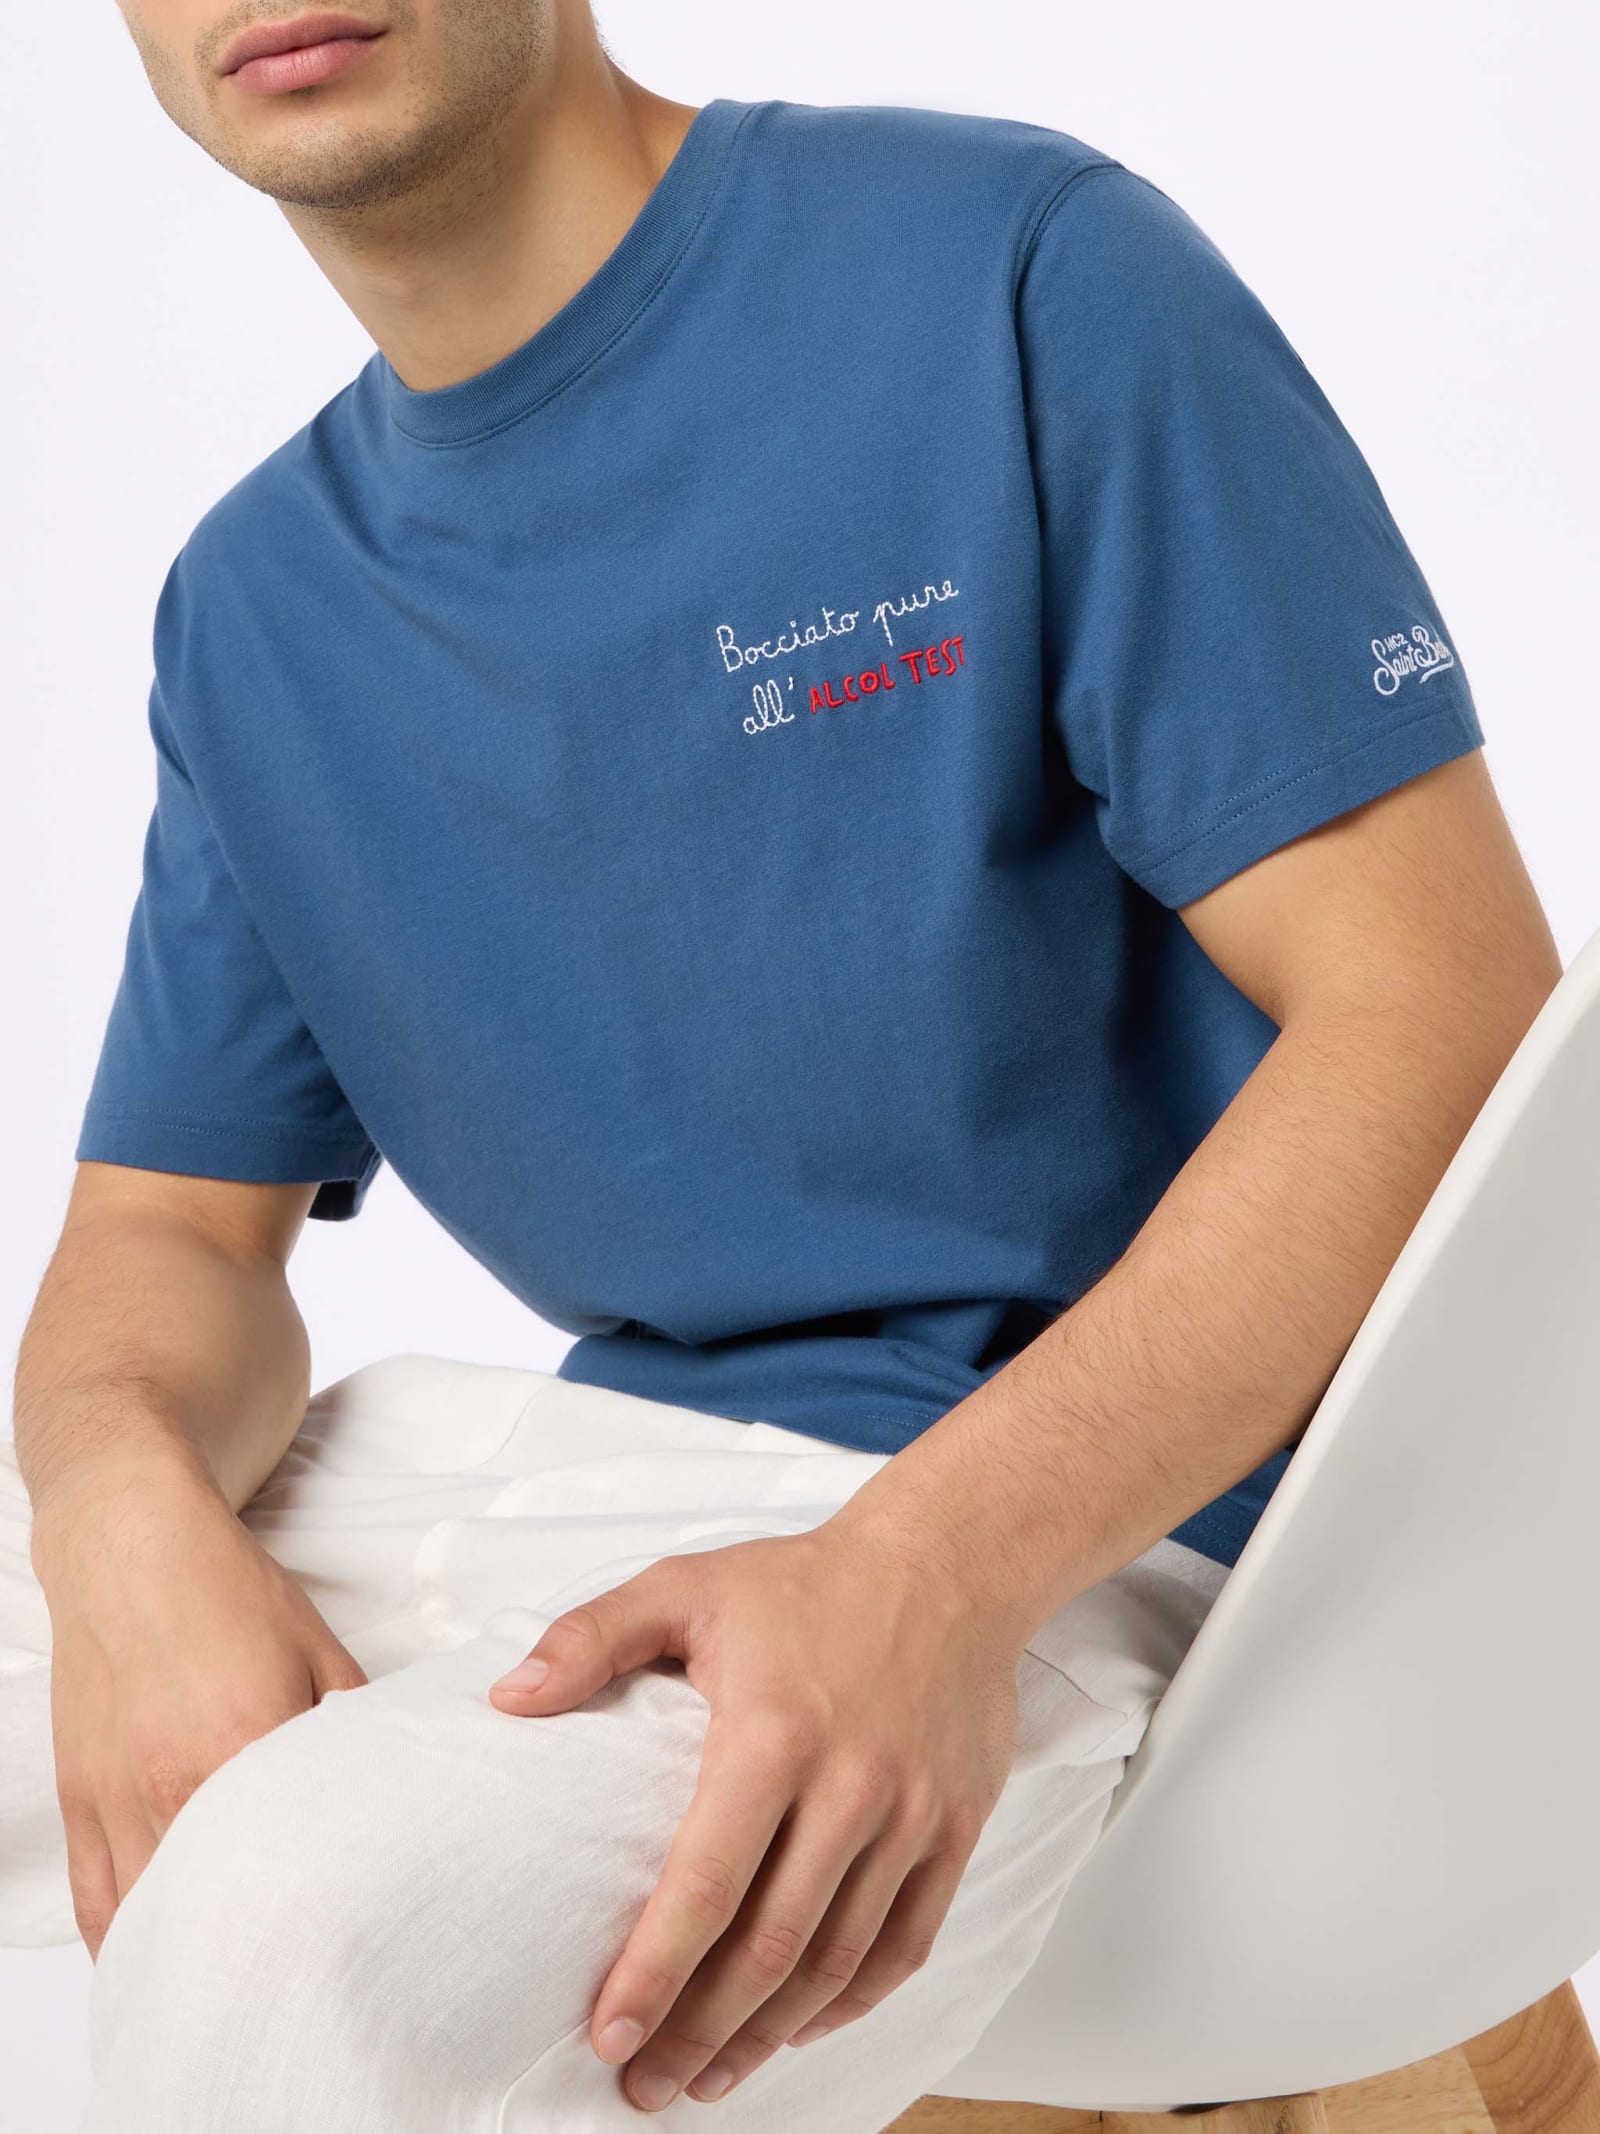 Man Classic Fit Cotton Jersey T-shirt Portofino With Bocciato Pure Allalcol Test Embroidery